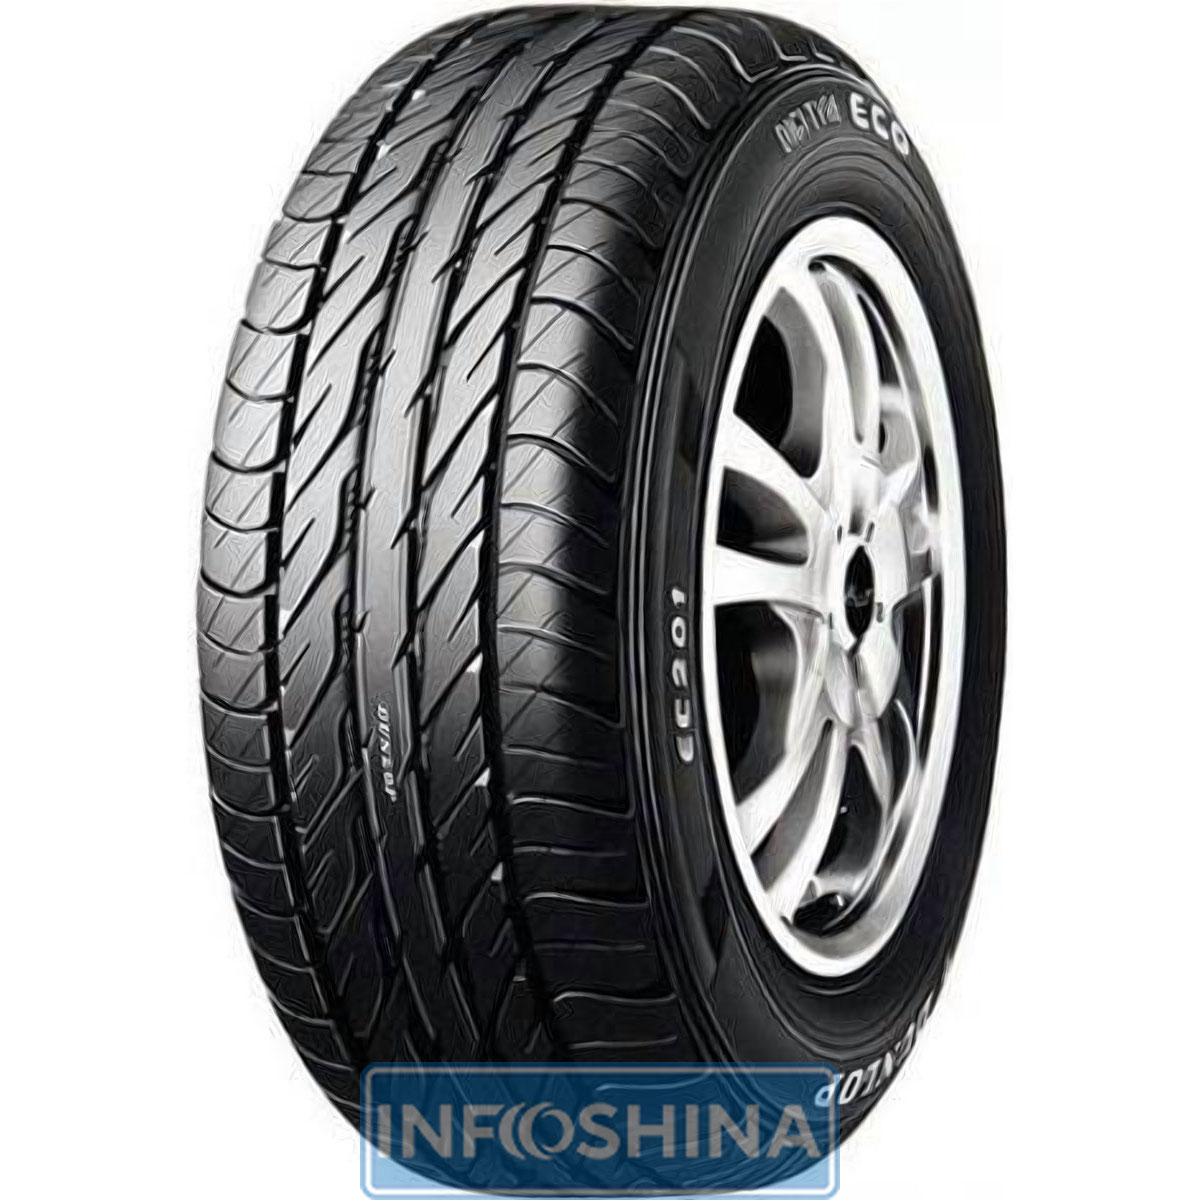 Купить шины Dunlop Digi-Tyre Eco EC 201 145/70 R12 69T